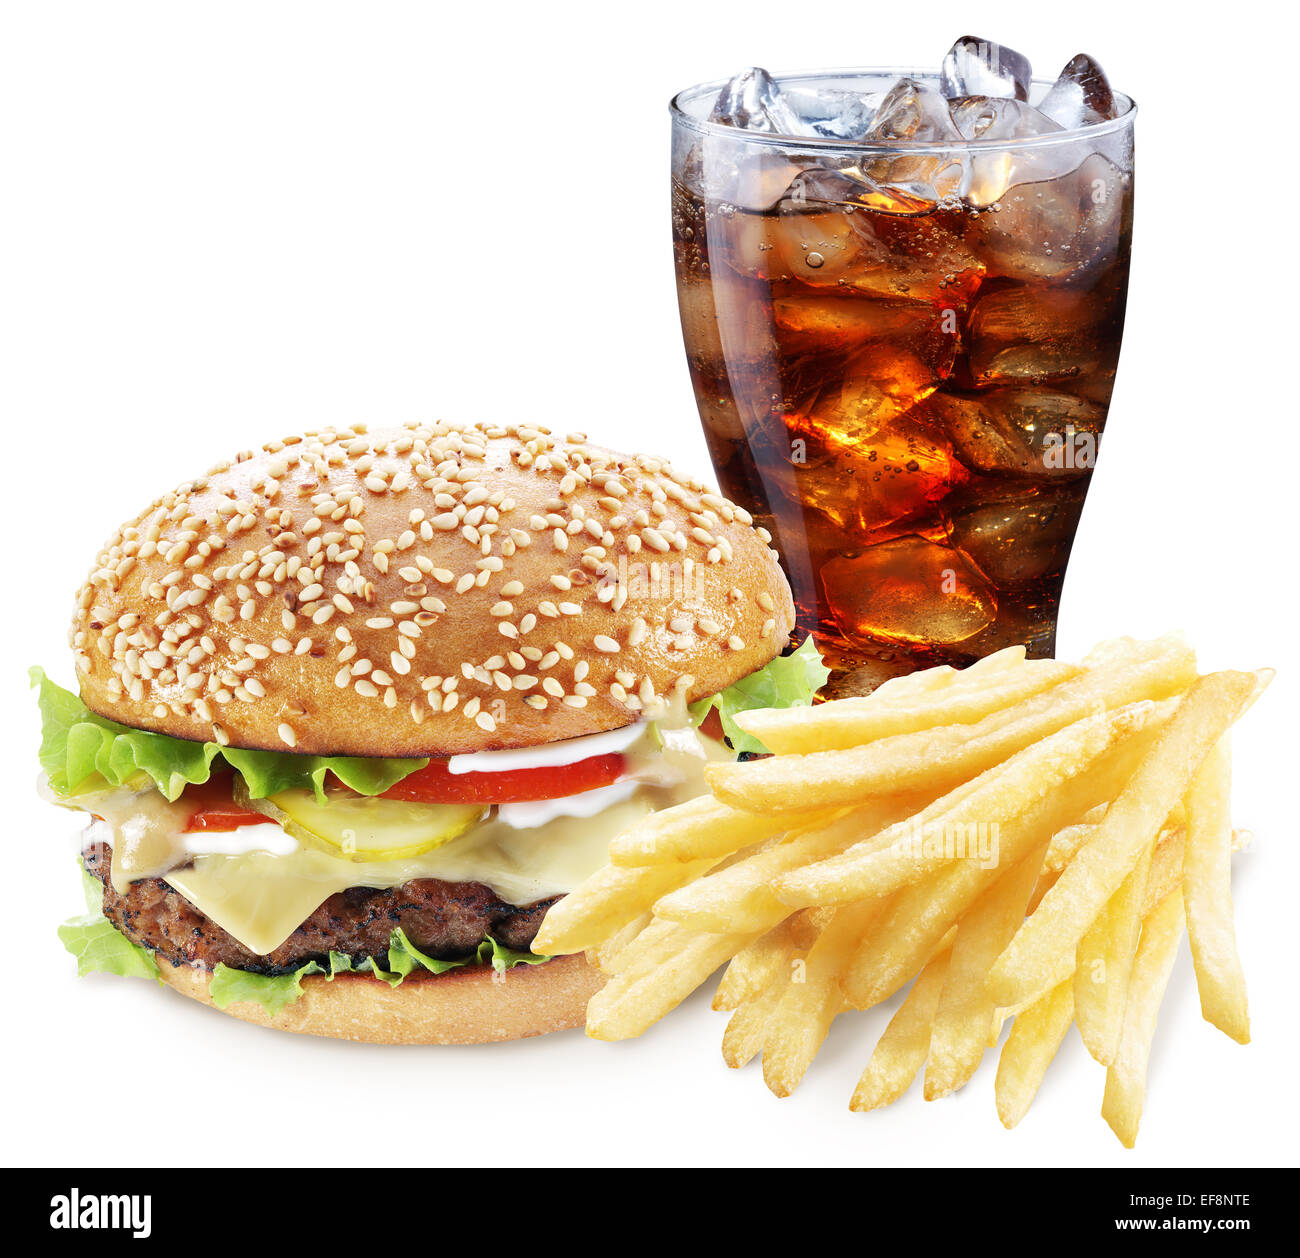 Hamburger, Pommes frites, Cola trinken. Speisen zum mitnehmen. Datei enthält Beschneidungspfade. Stockfoto